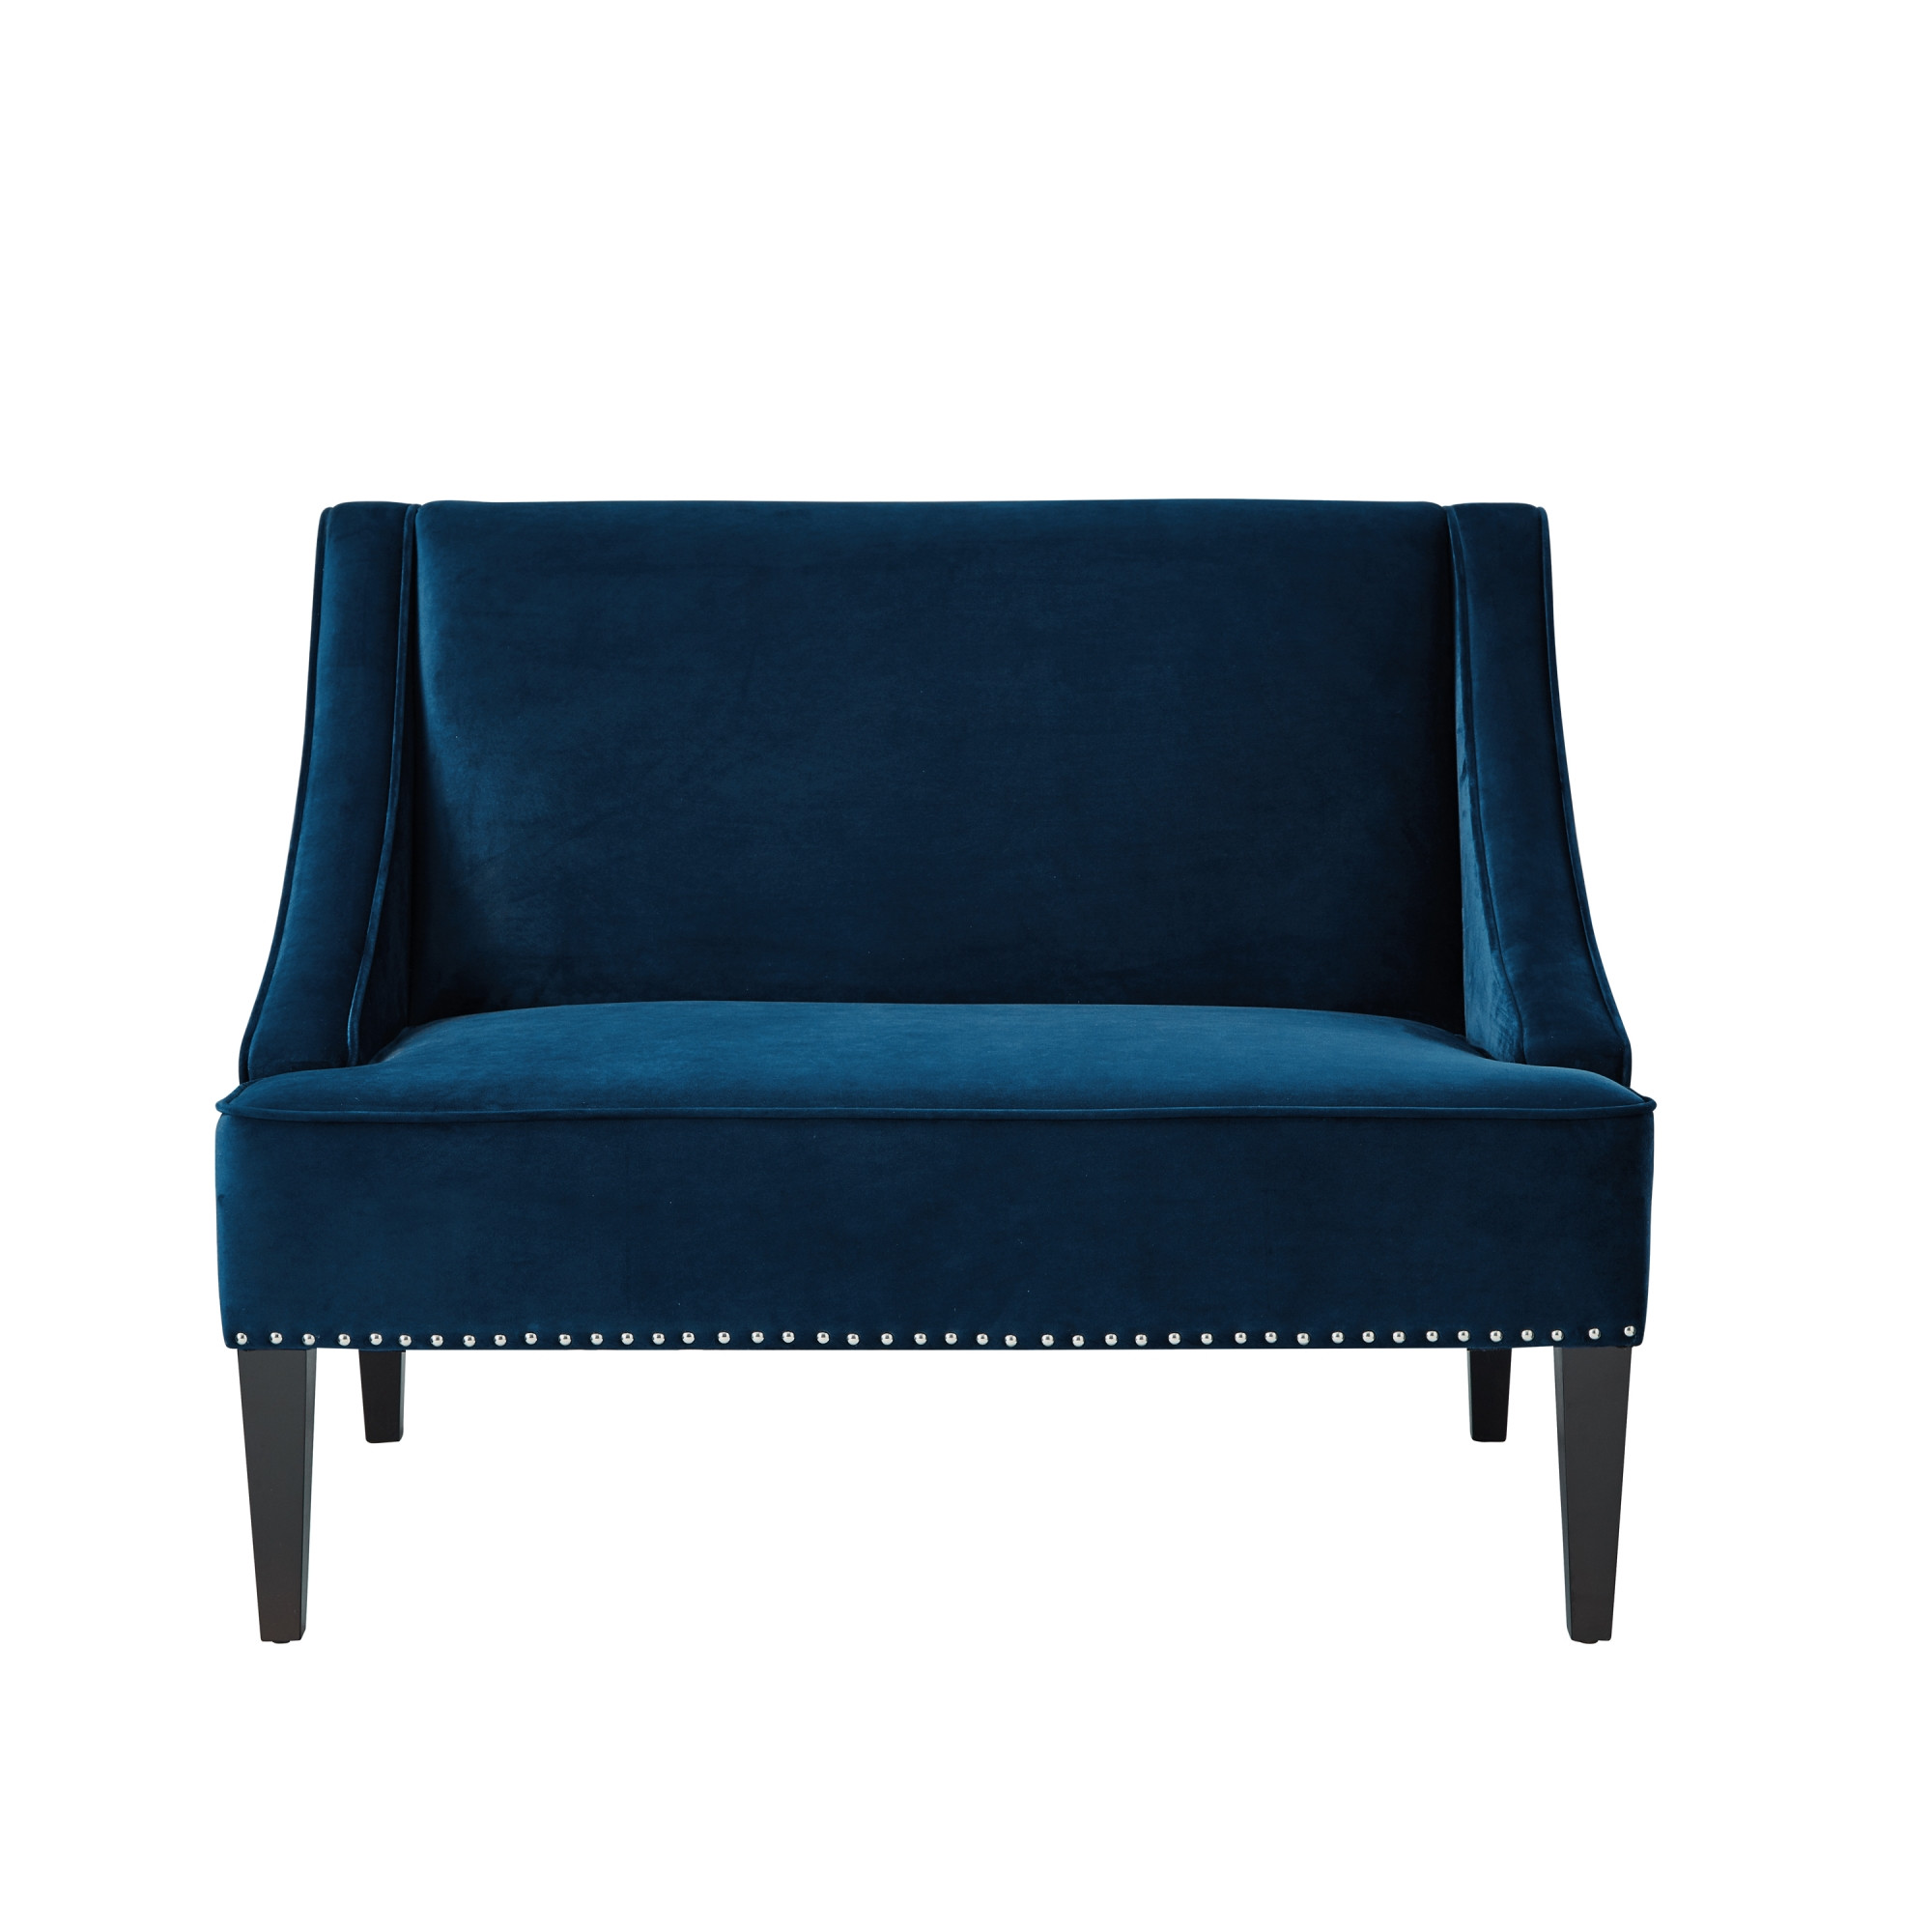 45" Navy Blue And Brown Upholstered Velvet Bench-490859-1